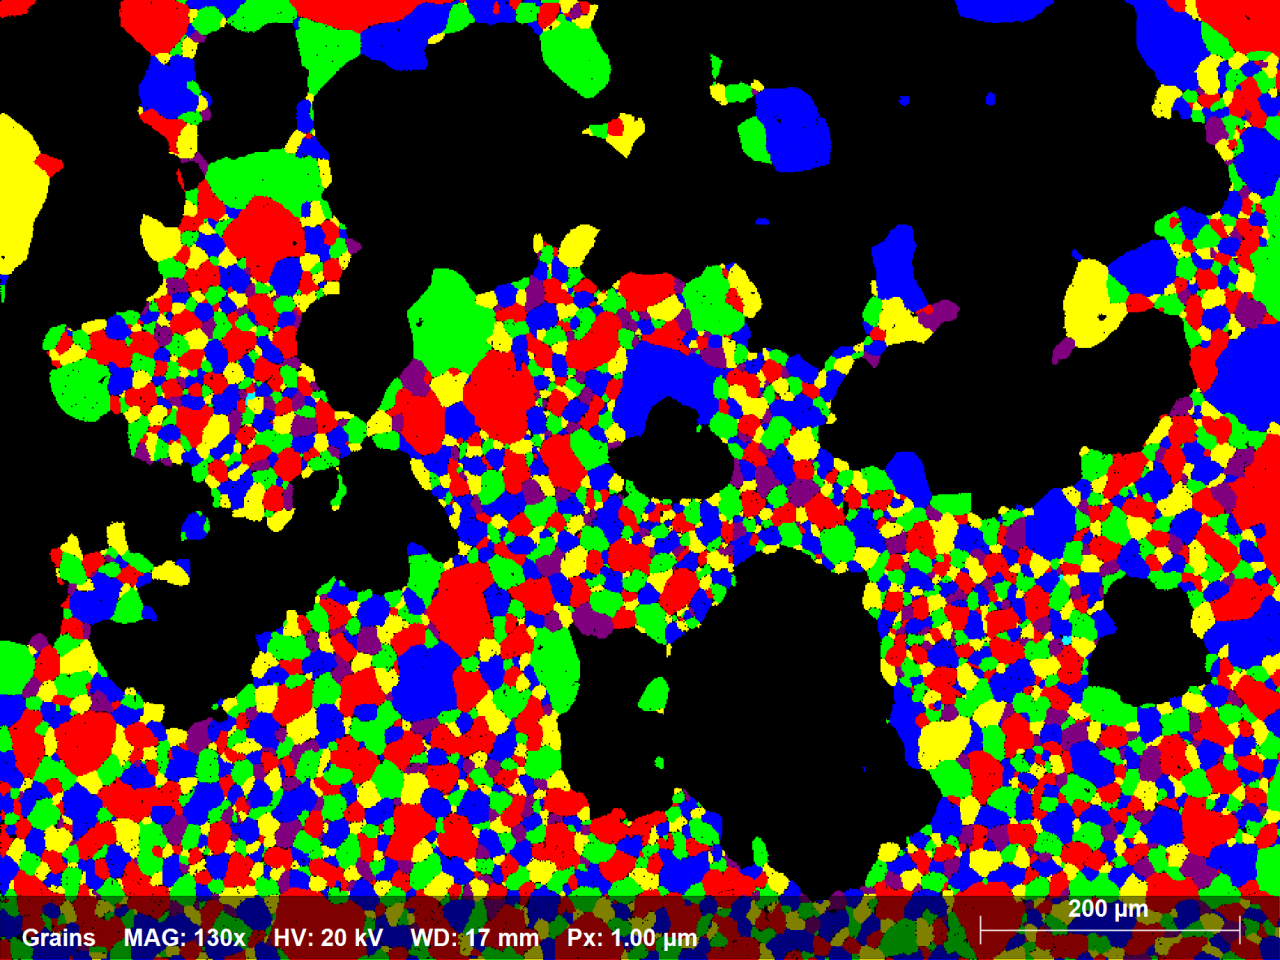 図1.4:70ミクロン未満の直径を持つすべての粒をランダムな色で示す镍合金EBSDマップのサブセット。2250粒がマップエリアの58%を占めます。